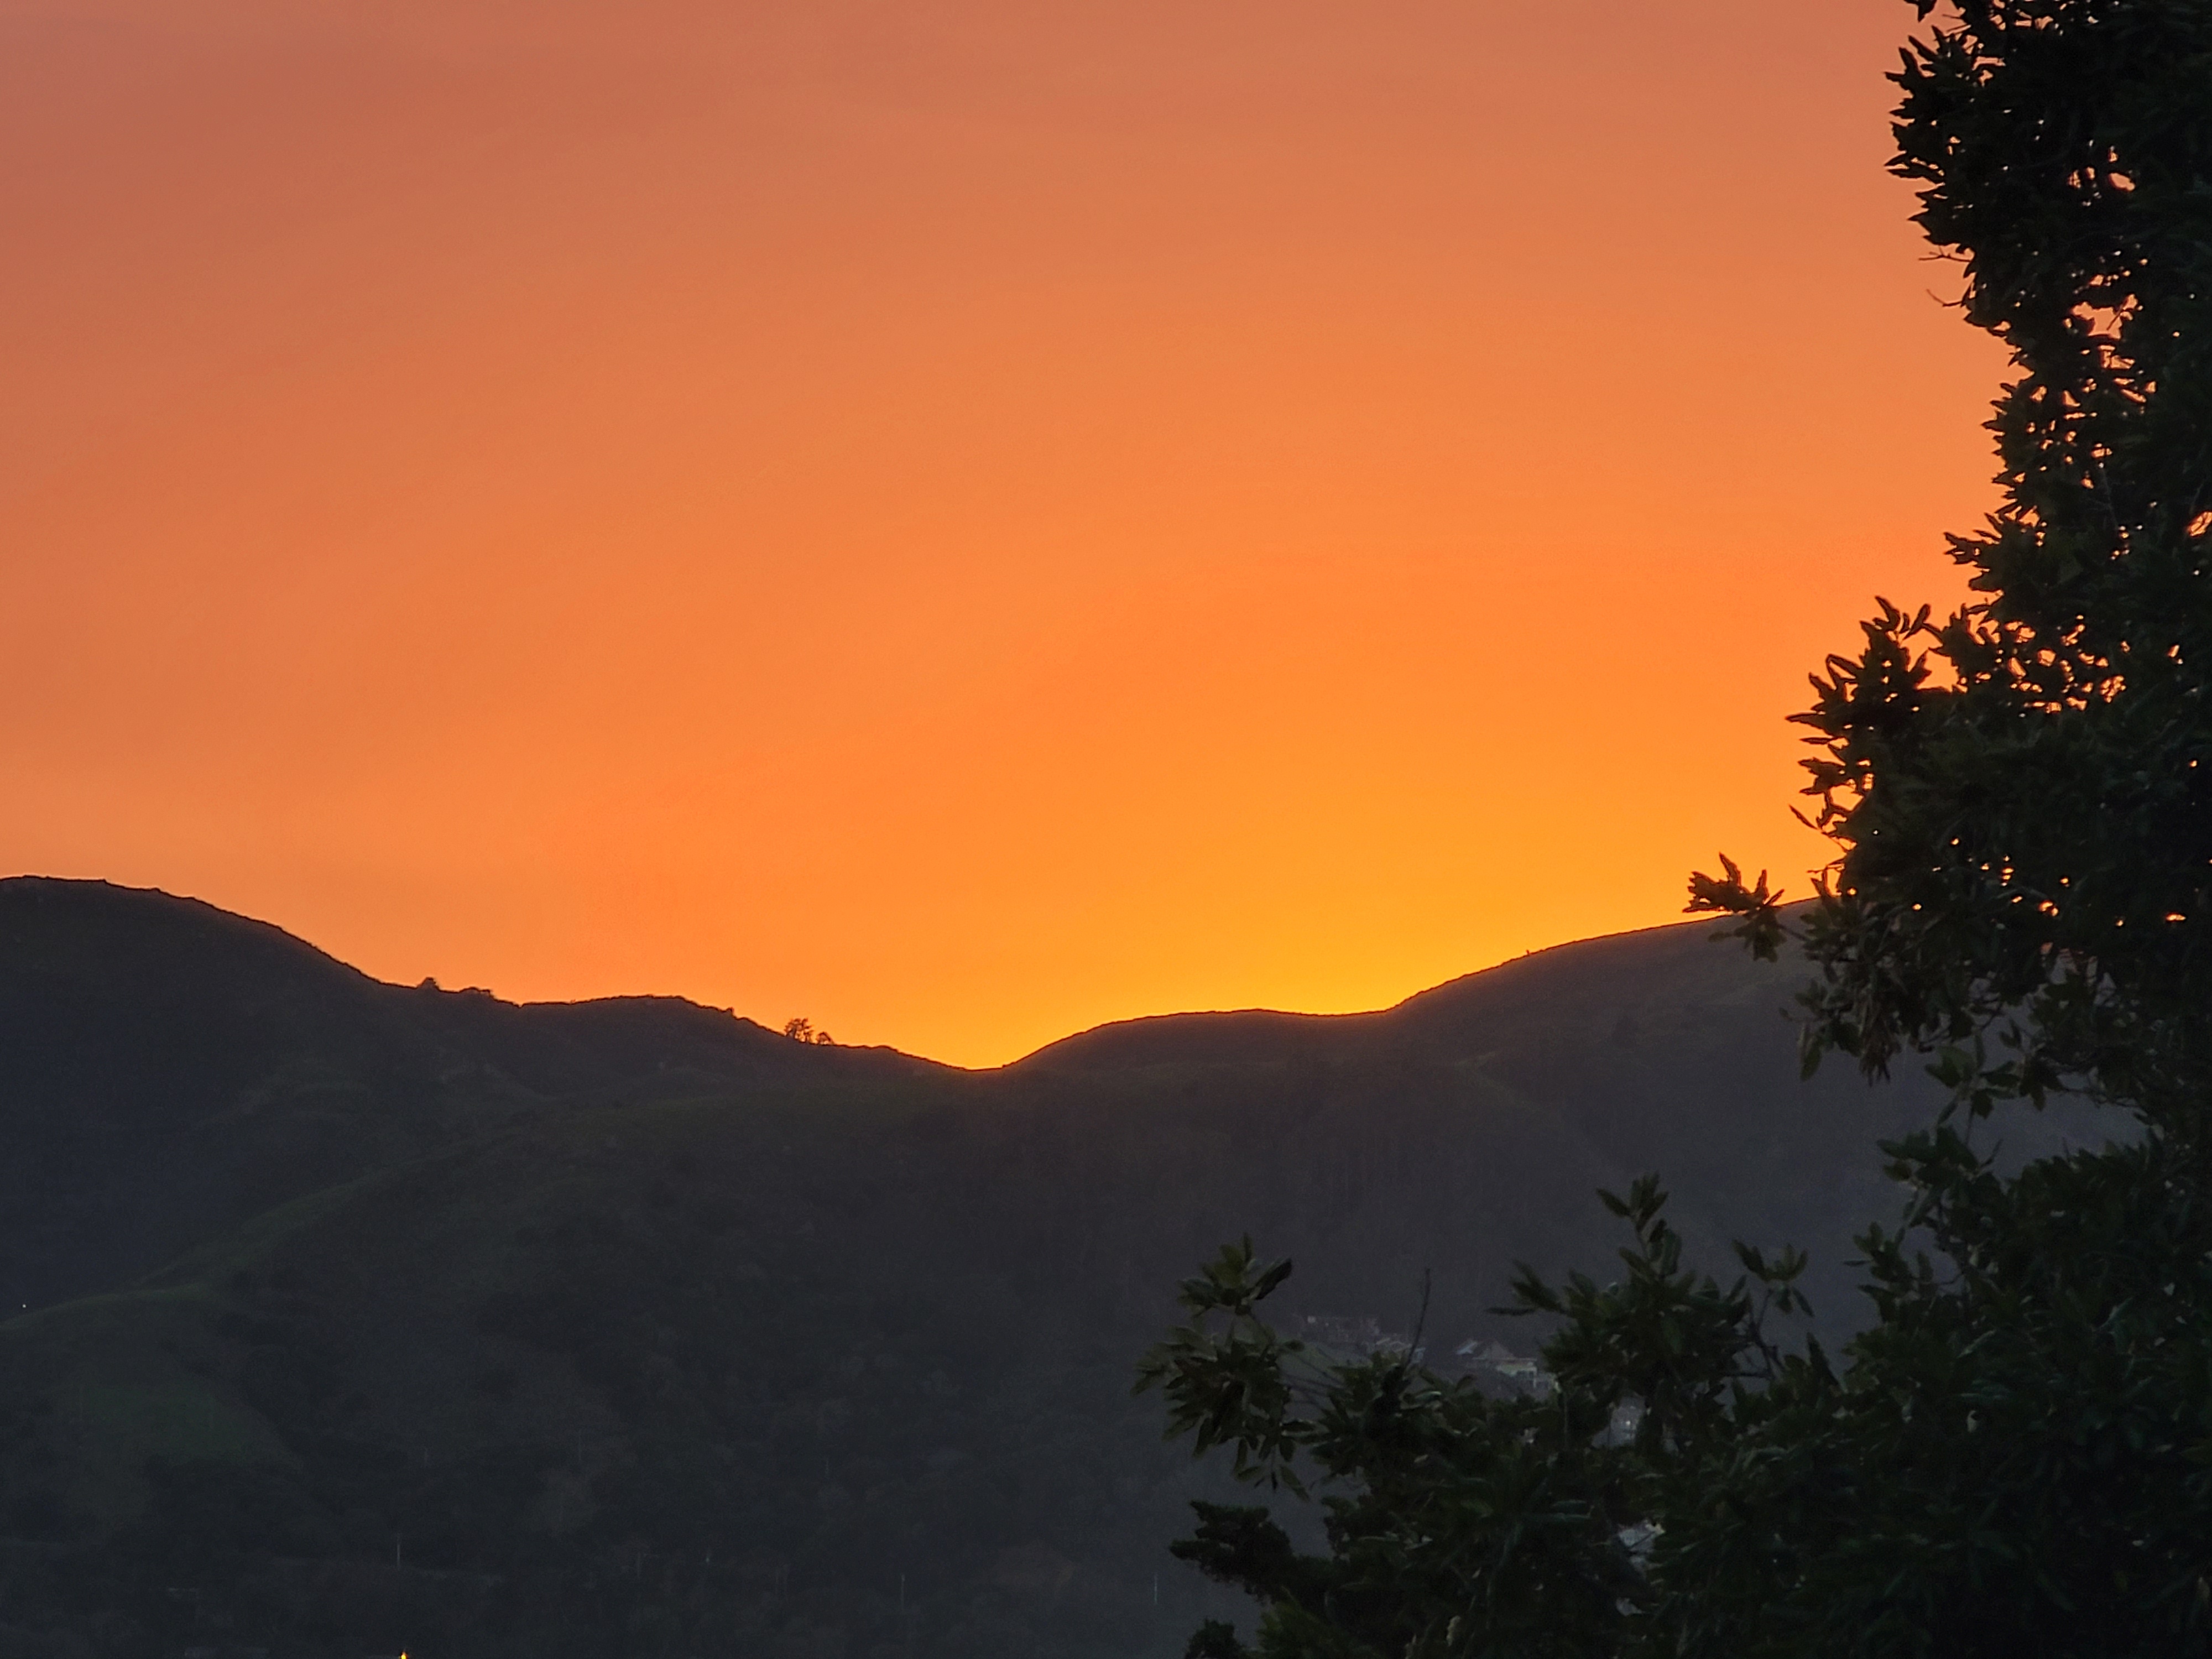 Sunset over Marin